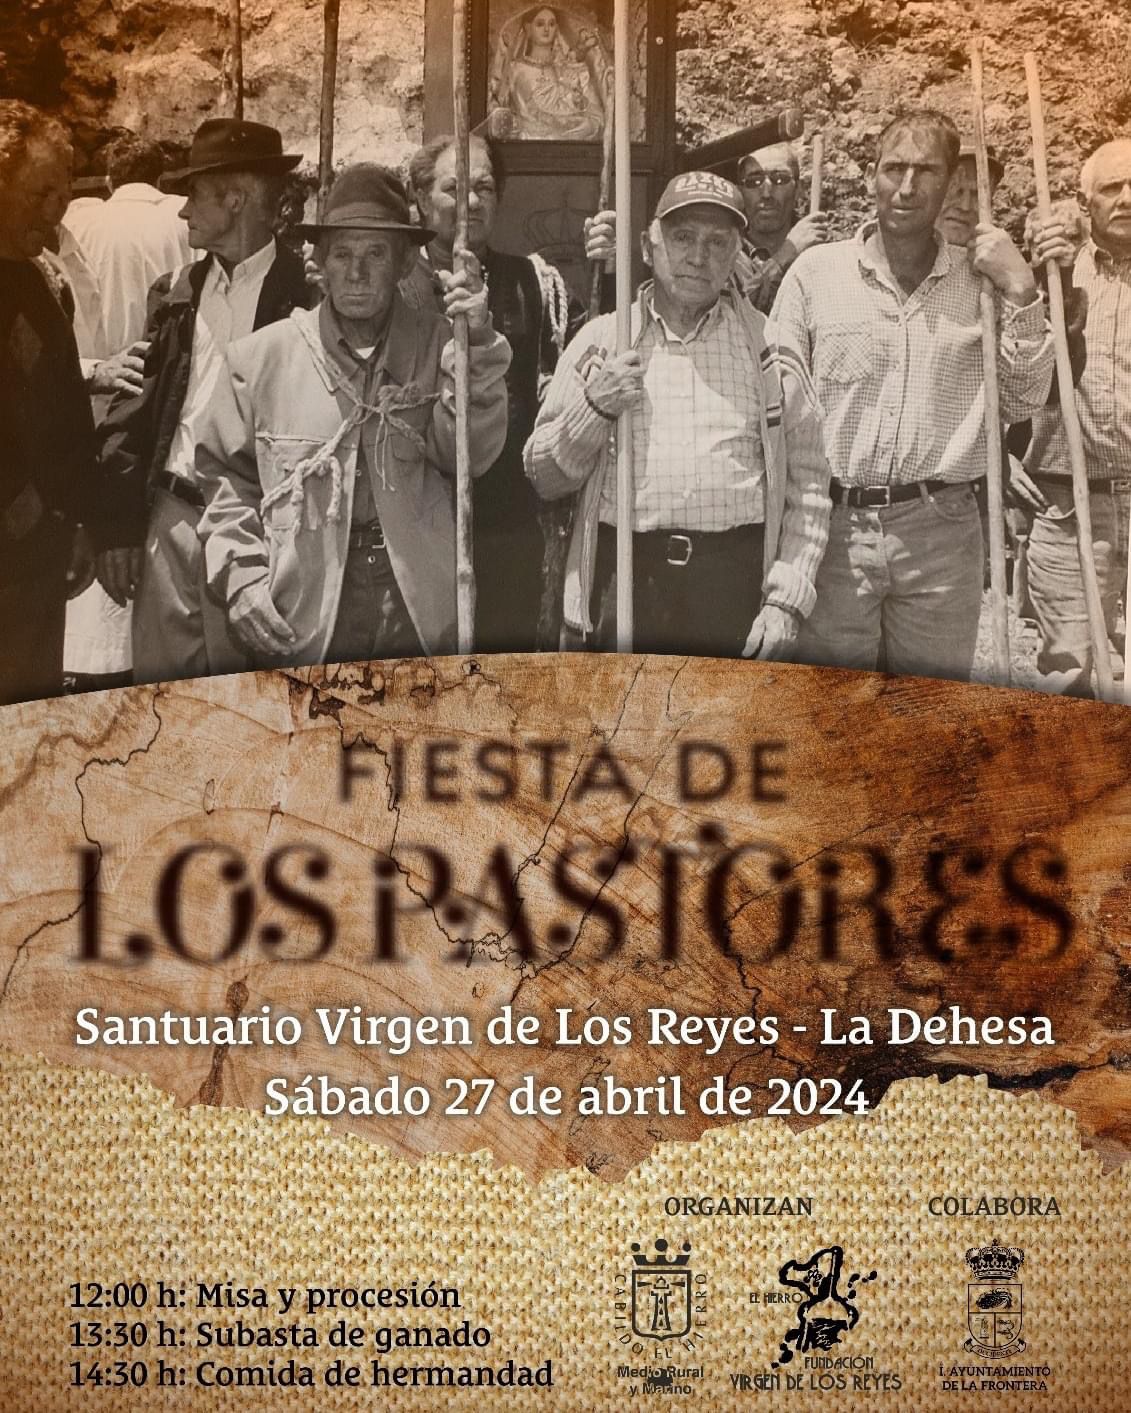 El Ayuntamiento de La Frontera ofrece un servicio de guaguas para la Fiesta de Los Pastores